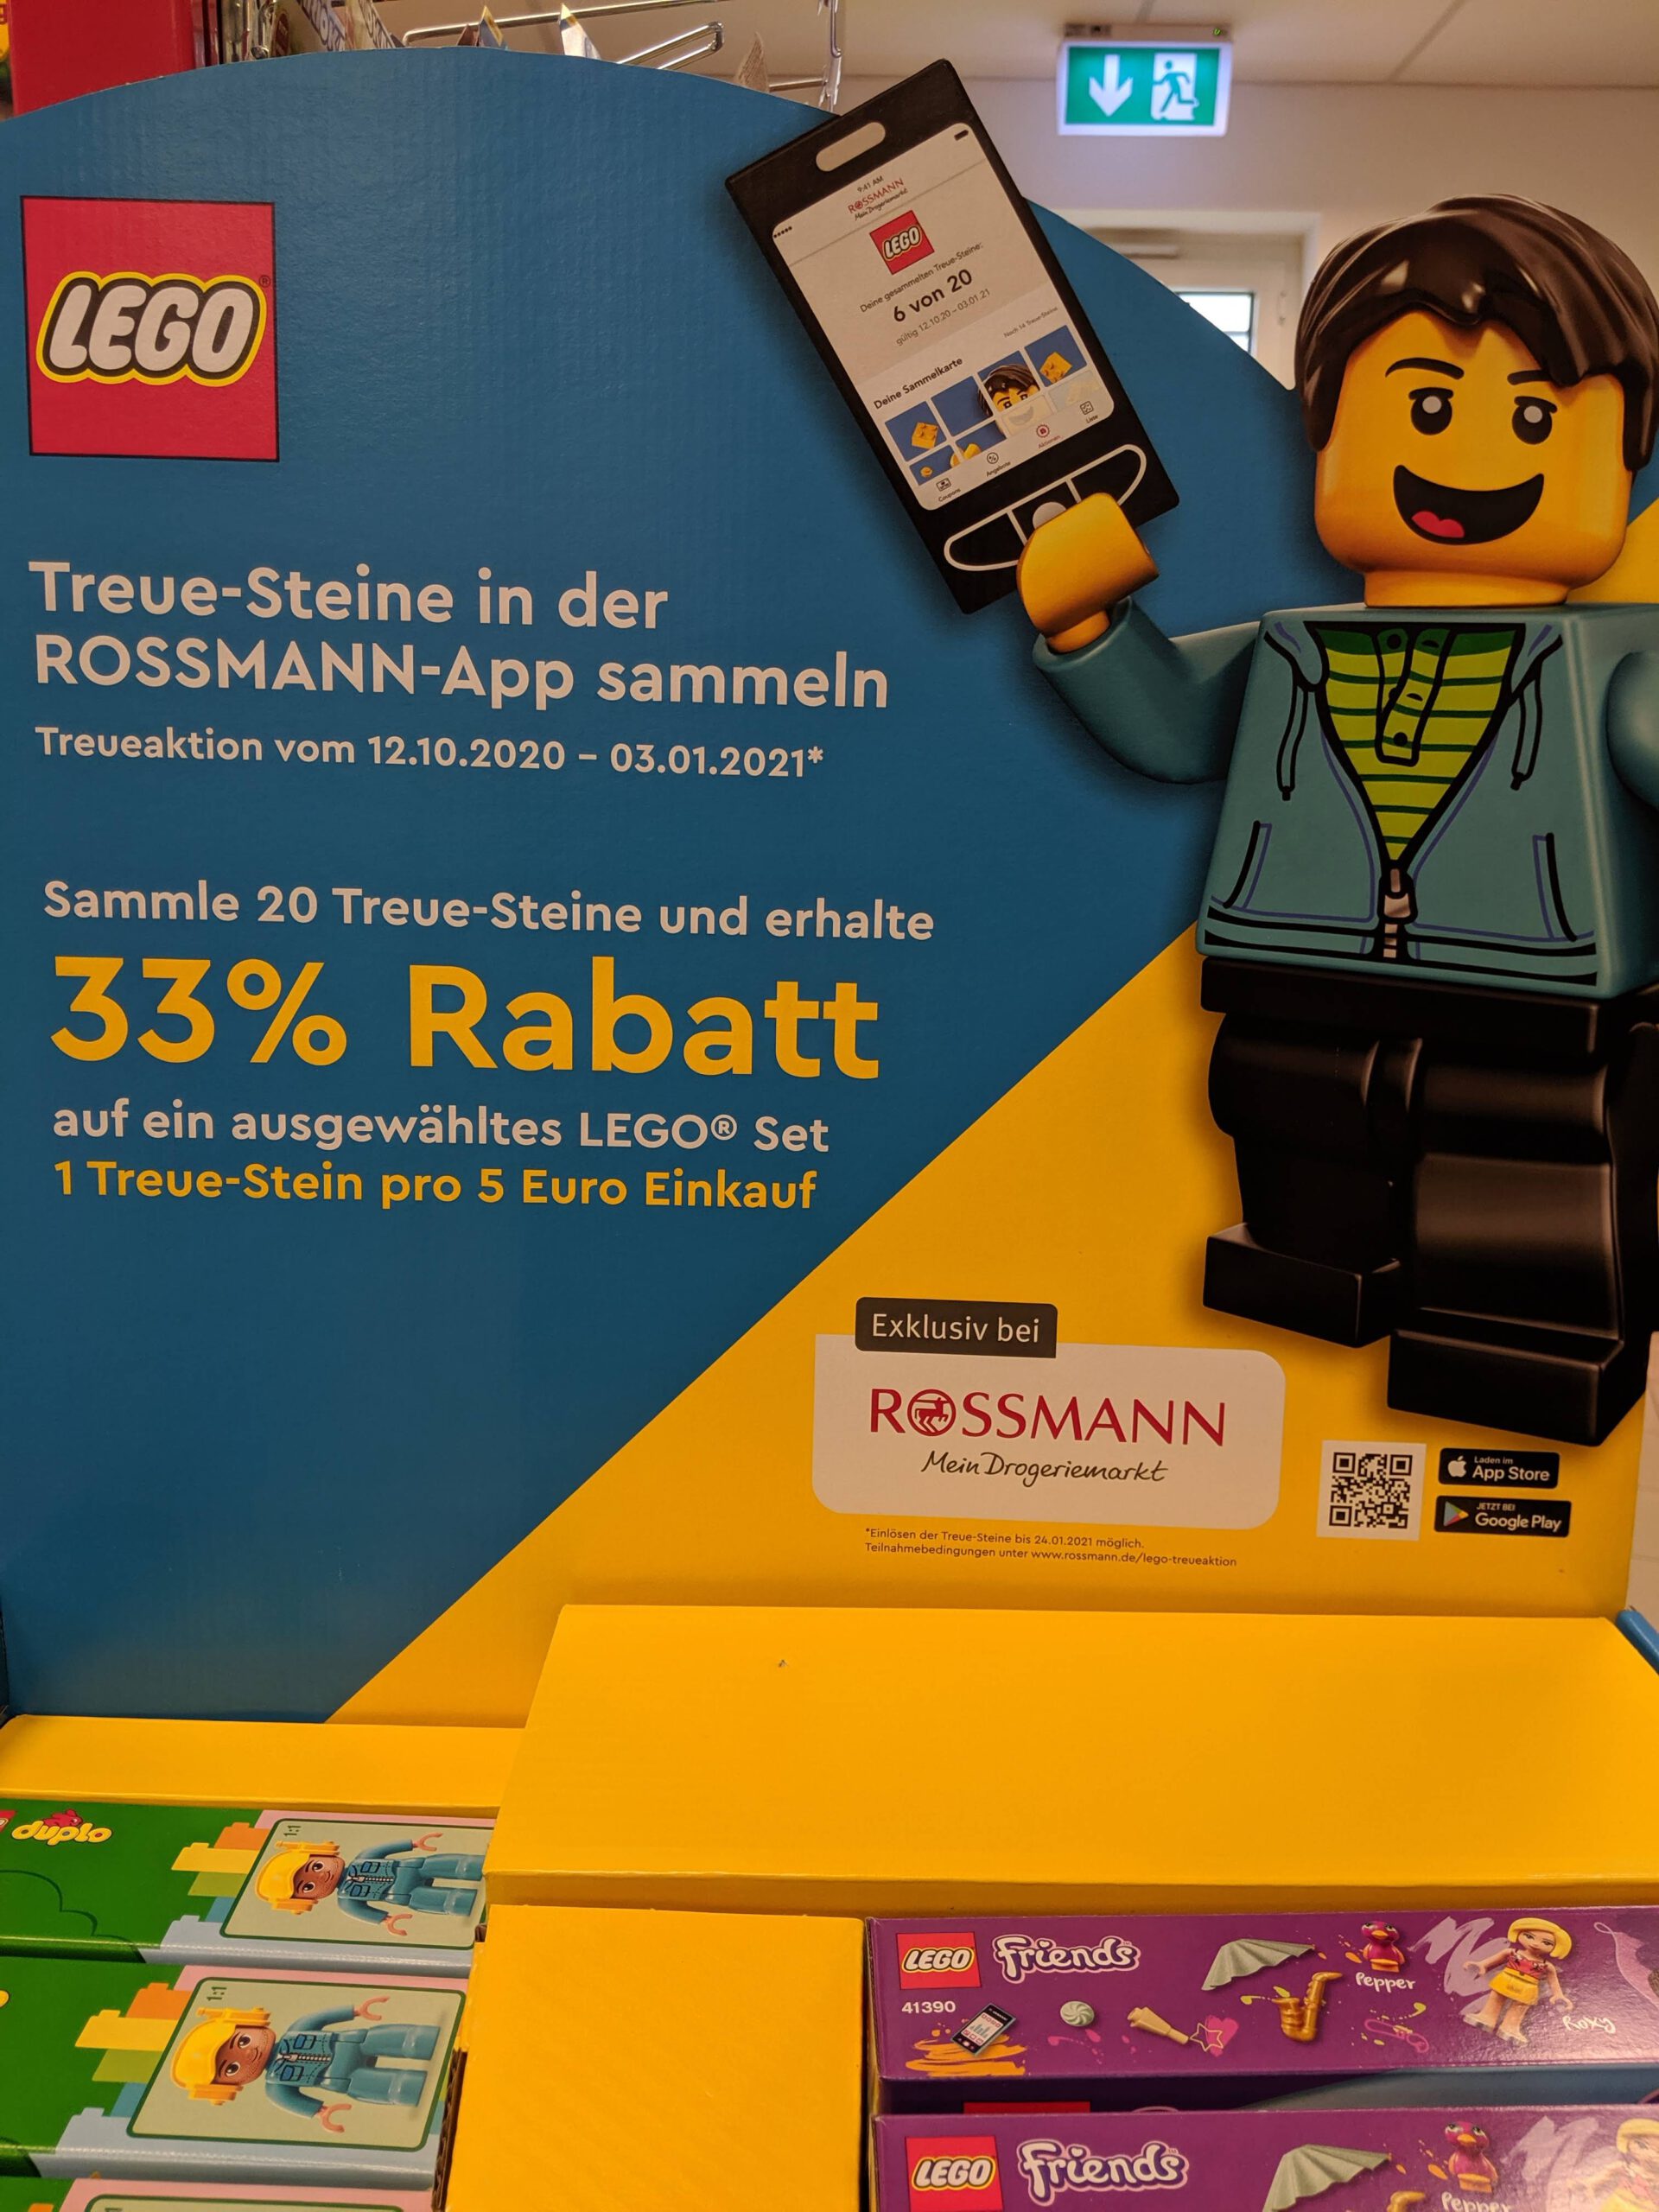 Rossmann Lego-Steine-Aktion: 33 % Rabatt auf seltene Lego-Sets